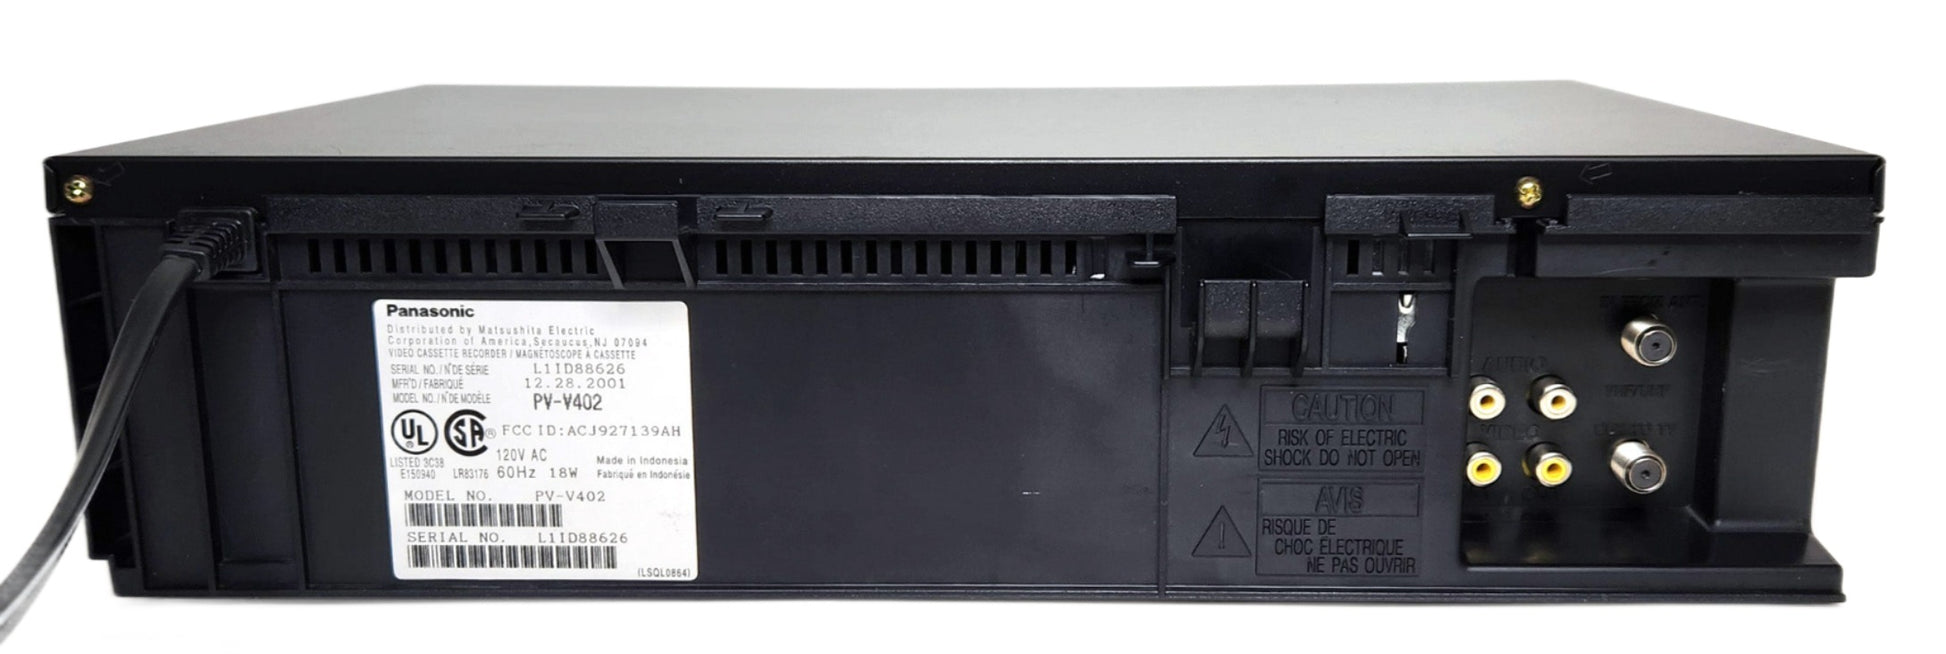 Panasonic PV-V402 Omnivision VCR, 4-Head Mono - Rear